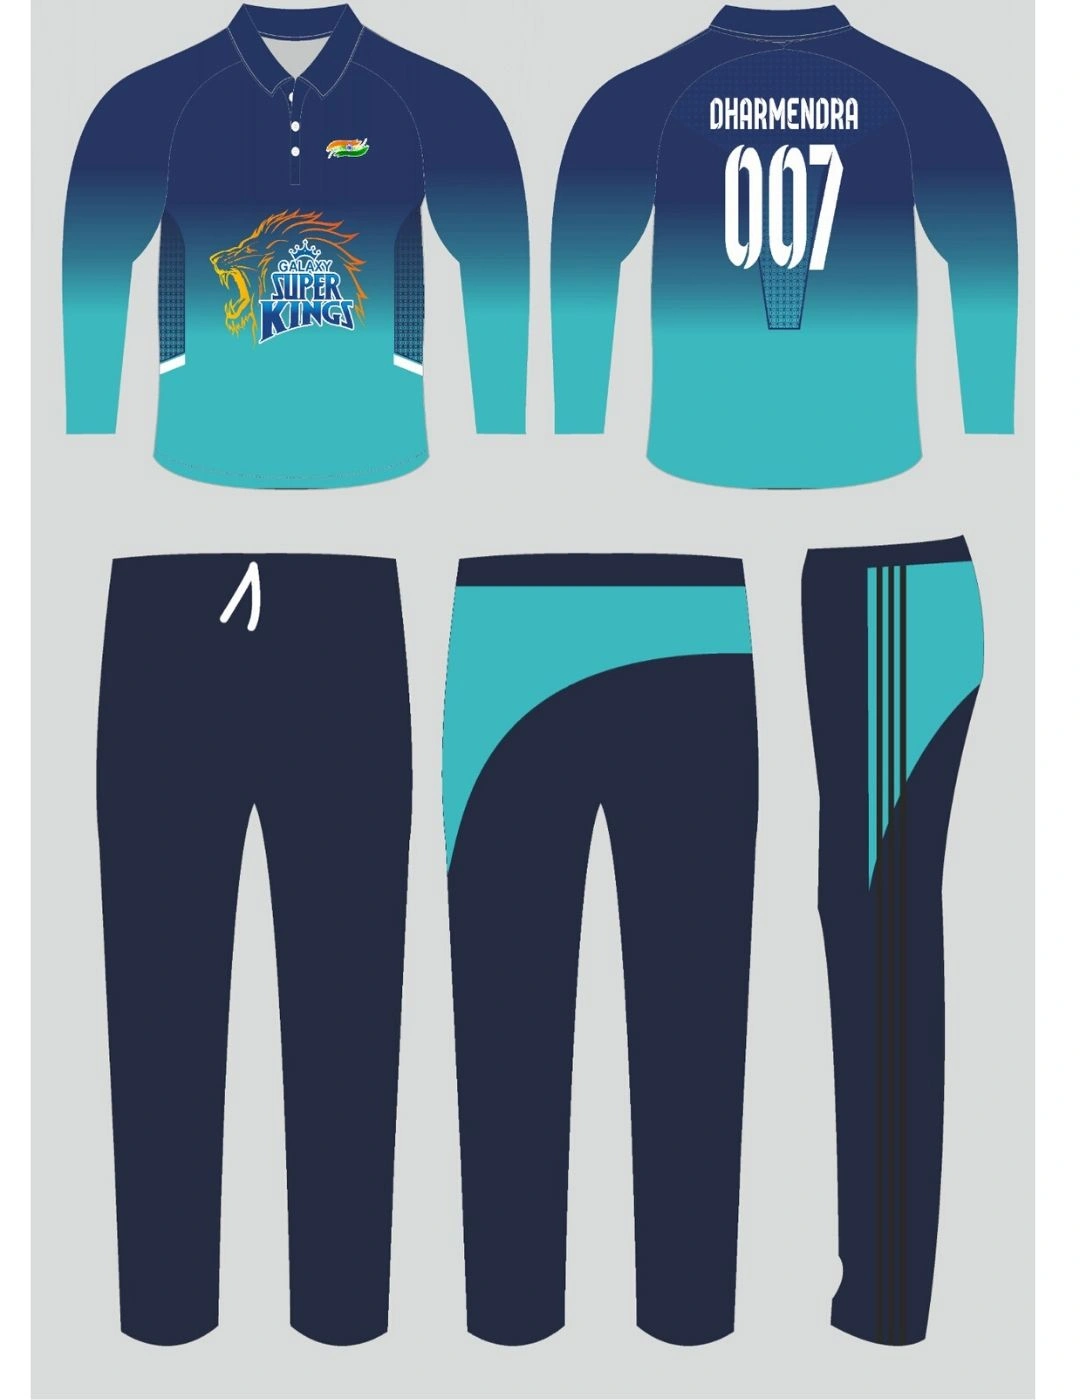 CRICKET DRESS | Cricket dress, Jersey design, Team jersey